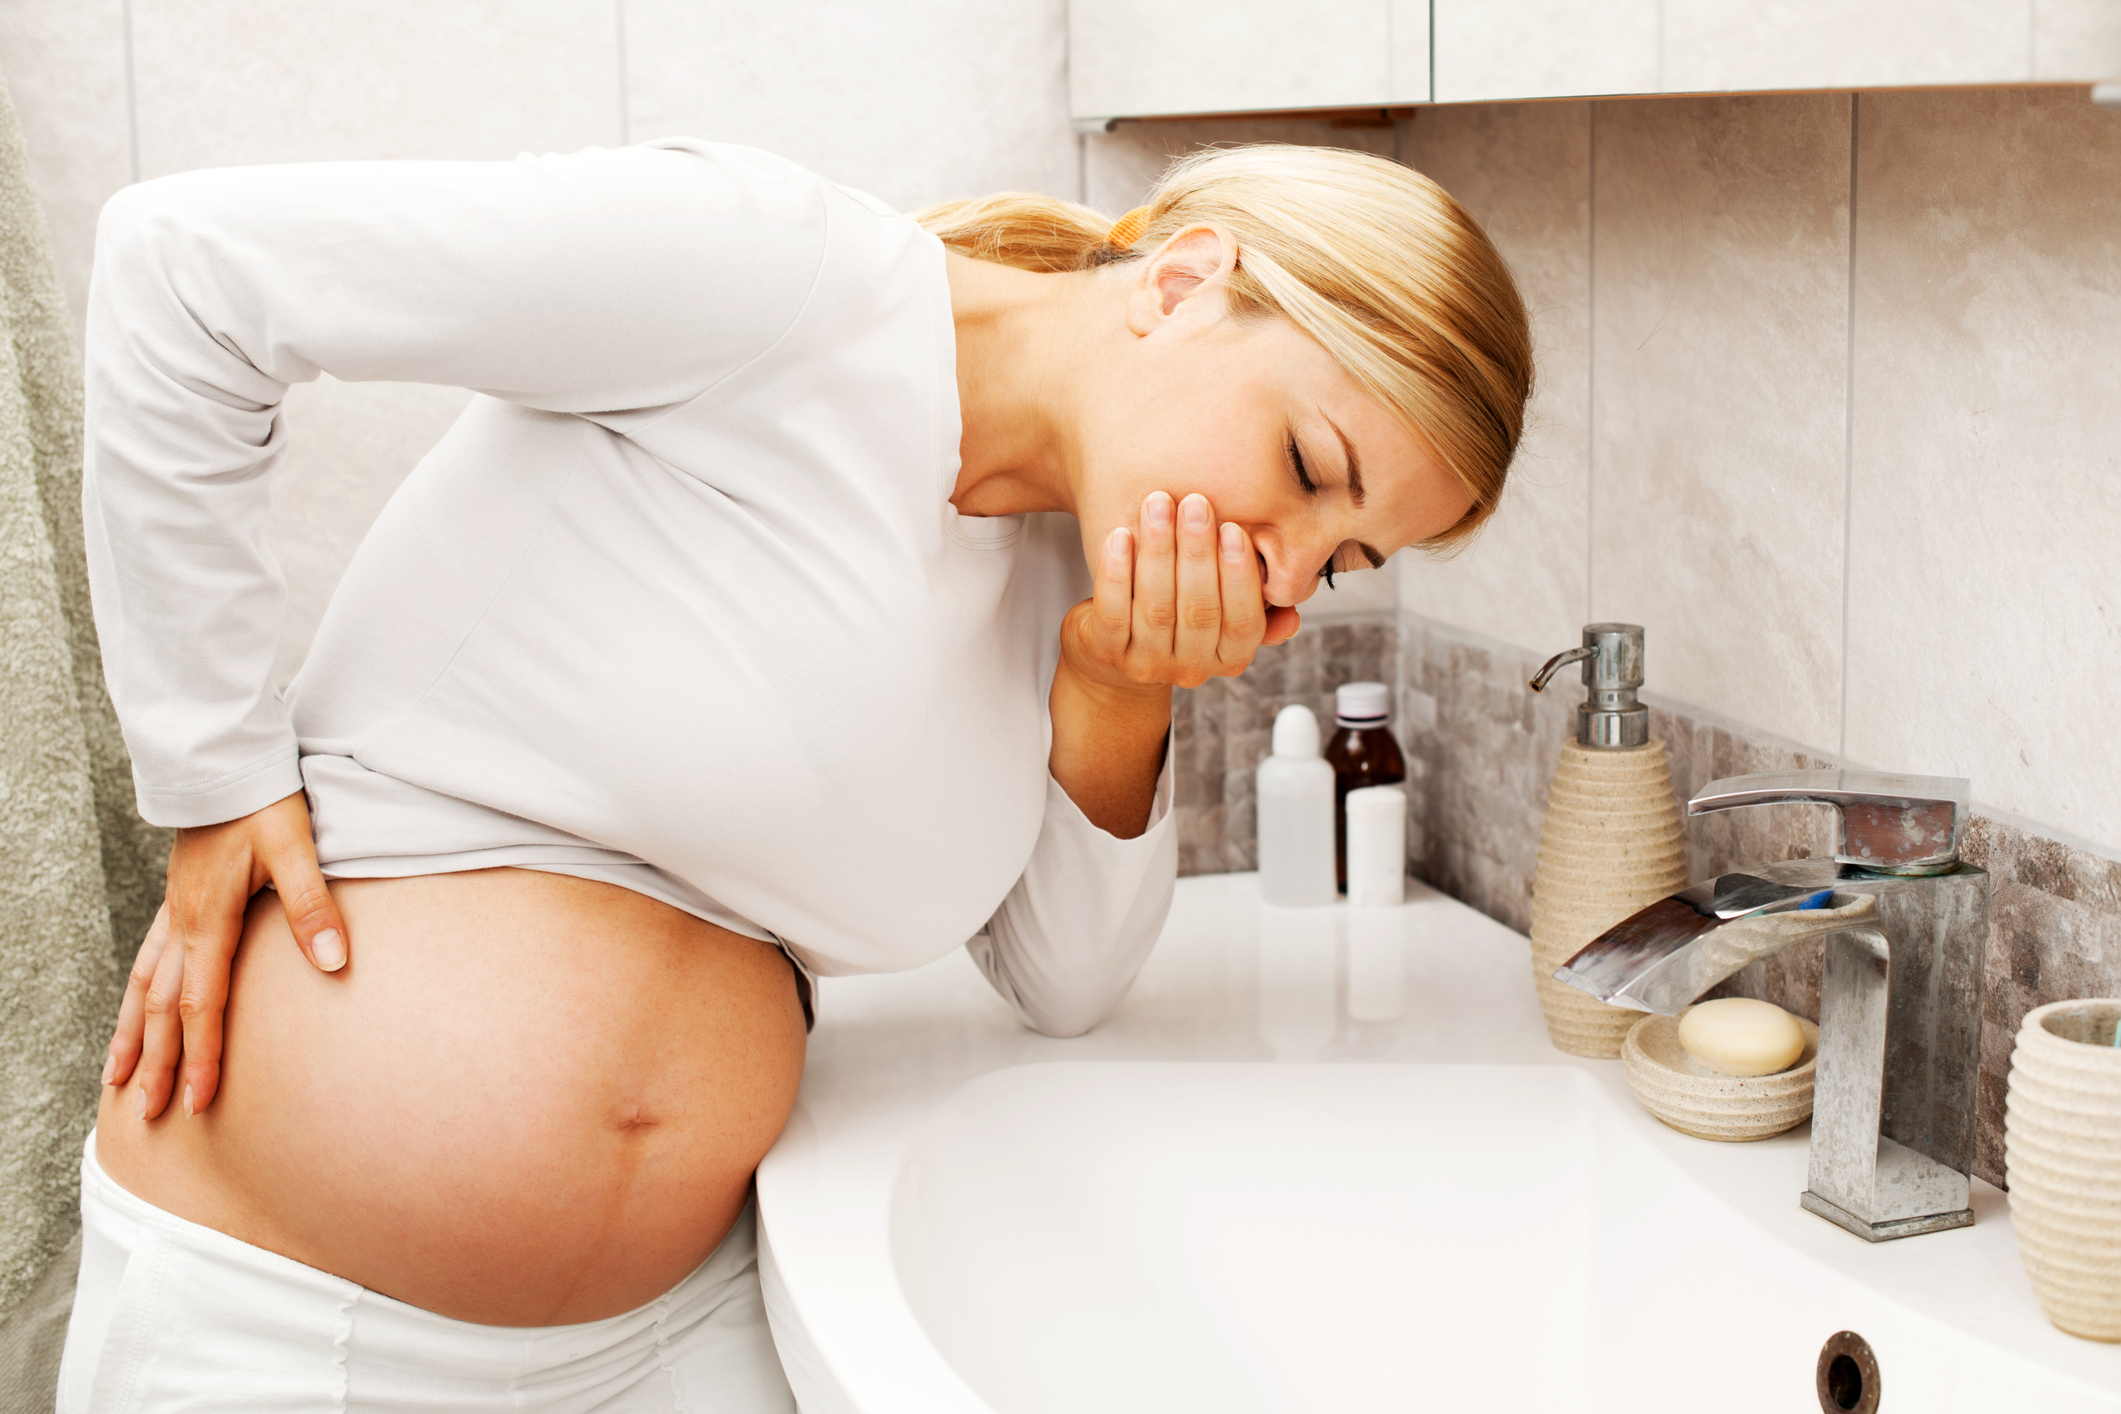 Të vjellat gjatë shtatzënisë shqetësojnë shumë nëna të ardhshme